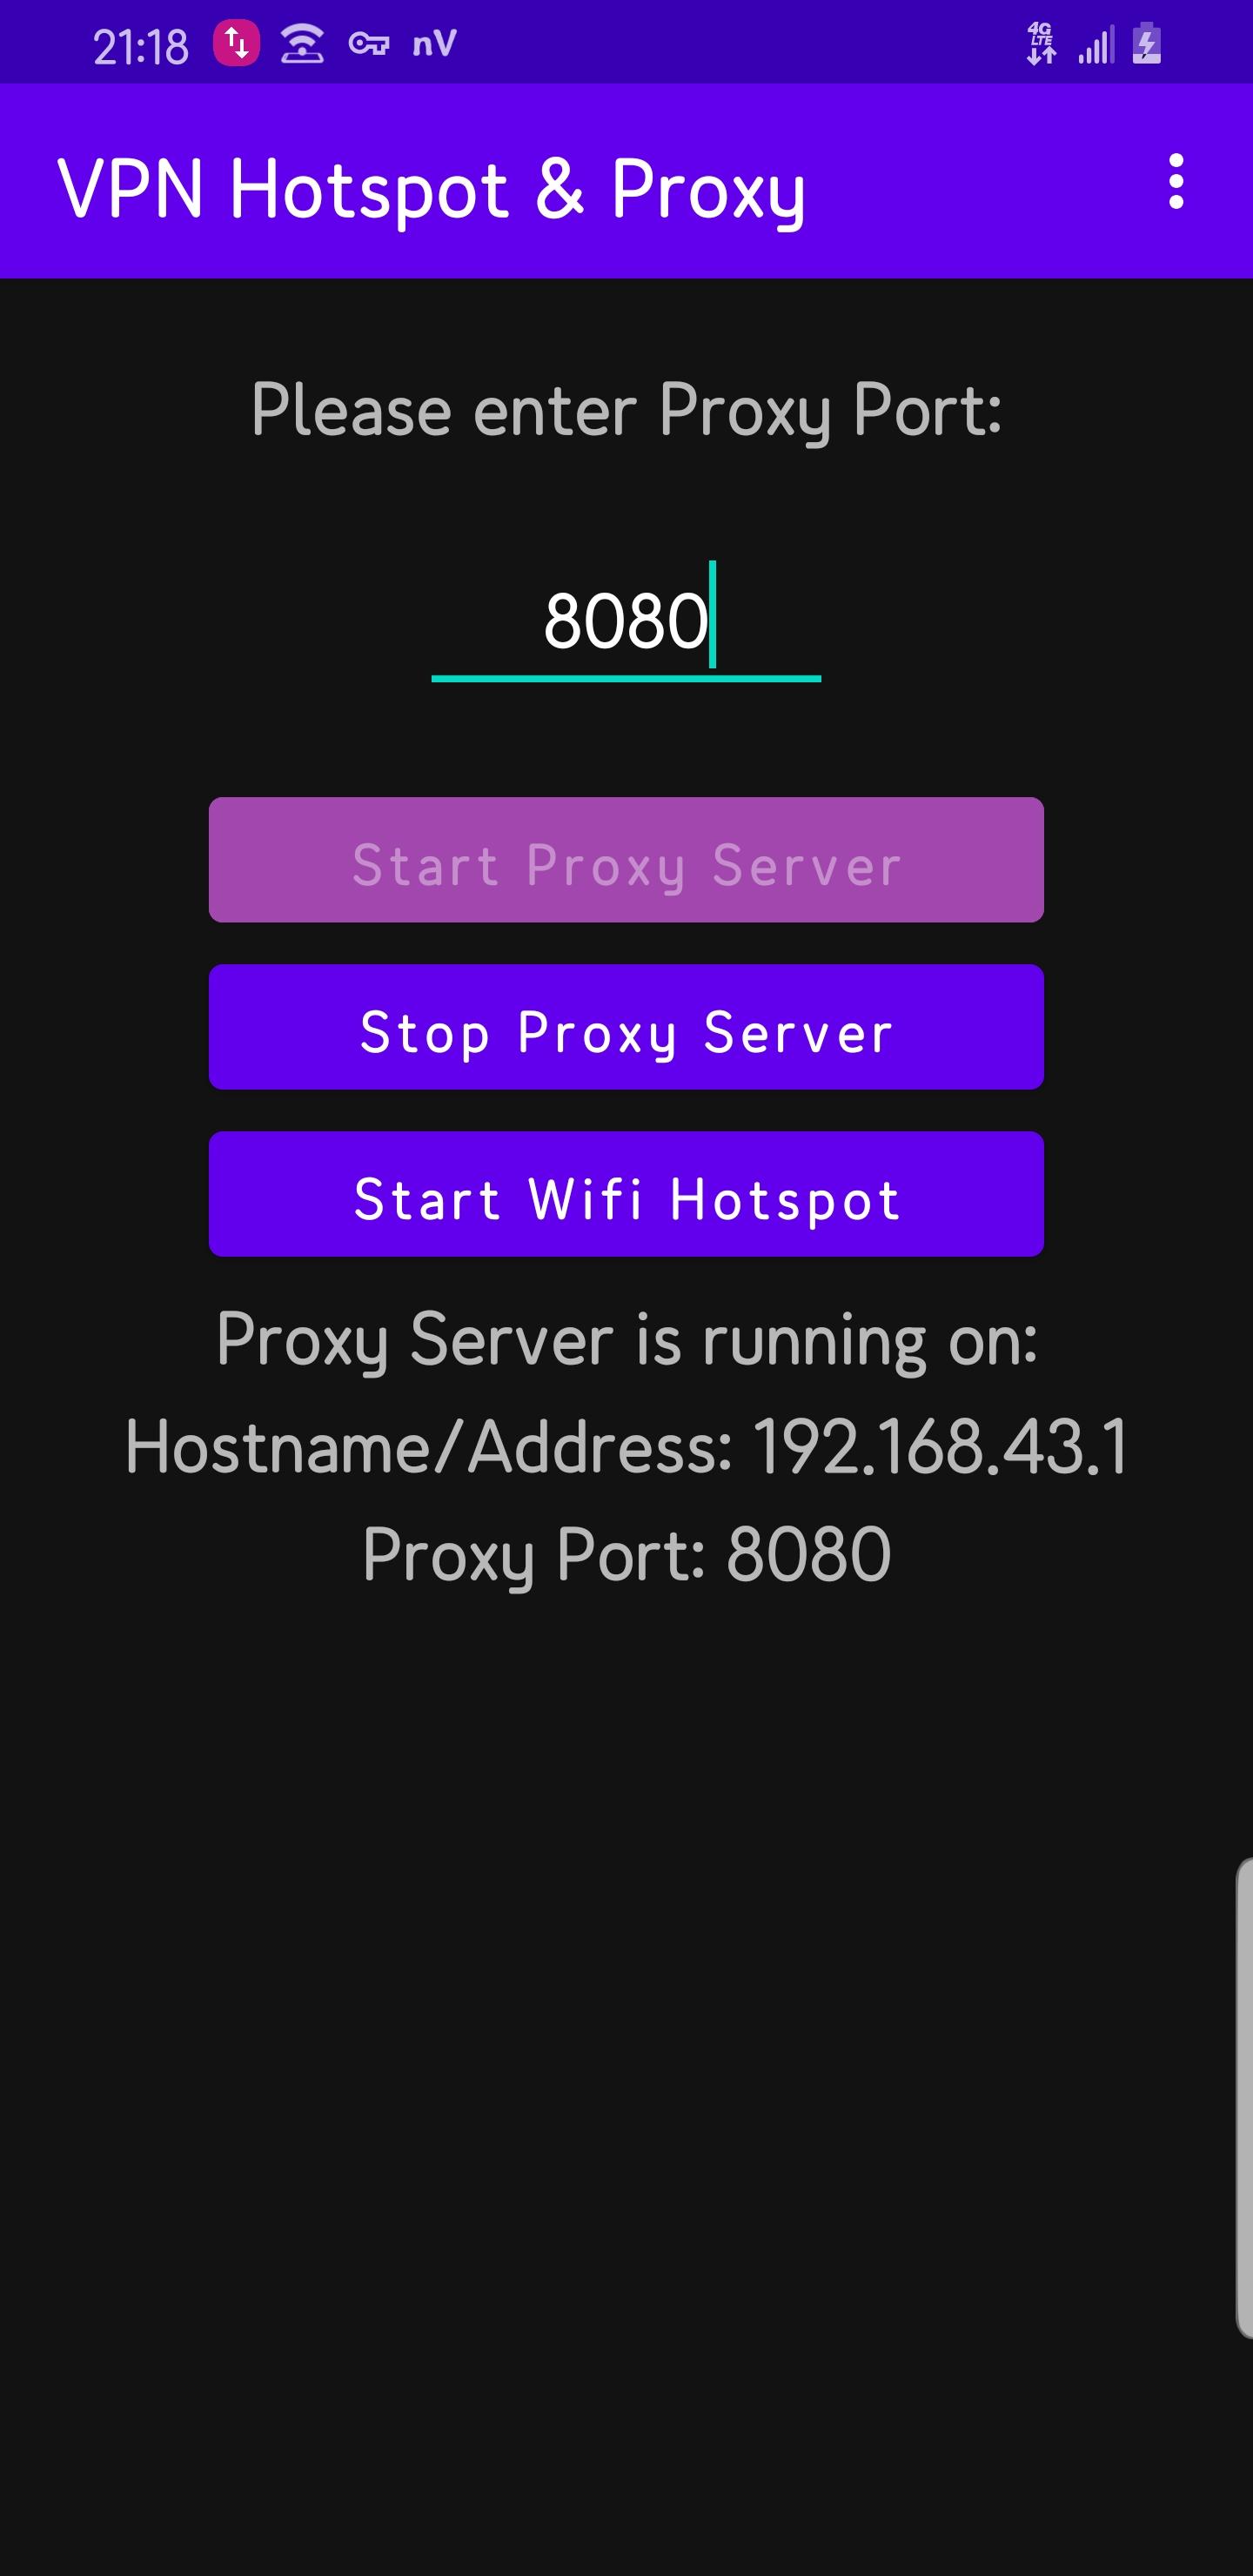 Proxy hotspot